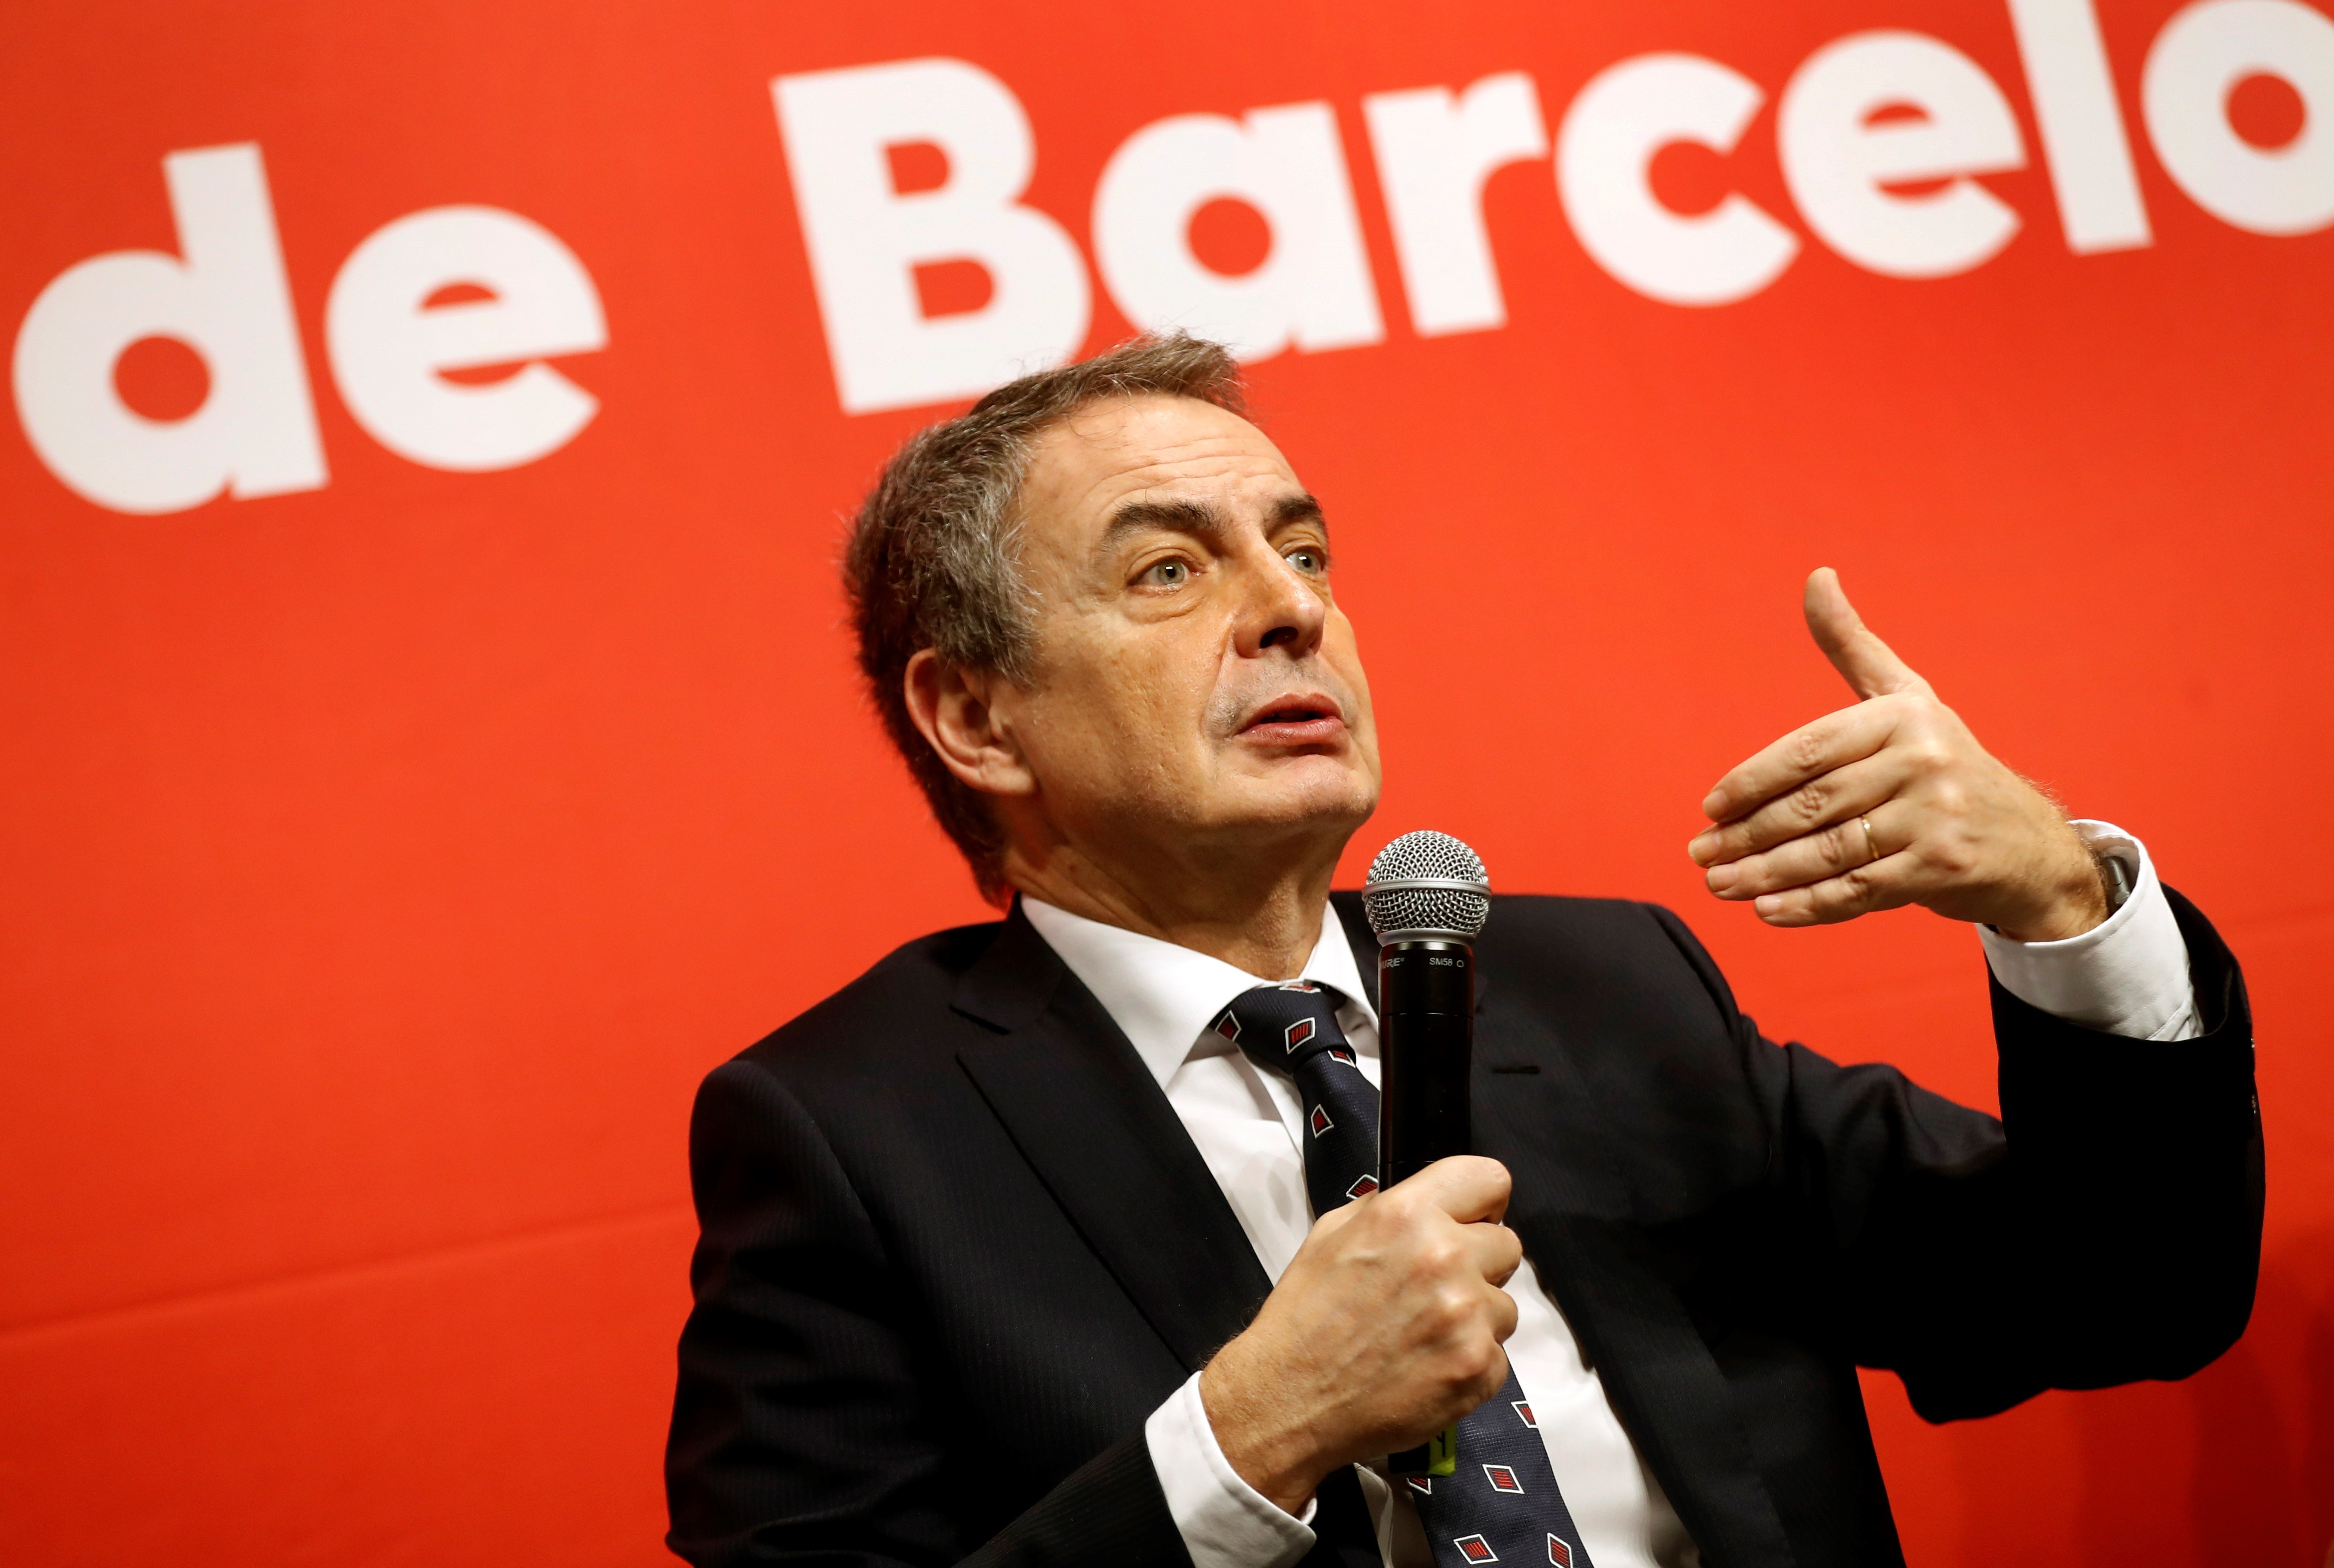 Zapatero calcula "al menos 5 años" para solucionar el conflicto catalán